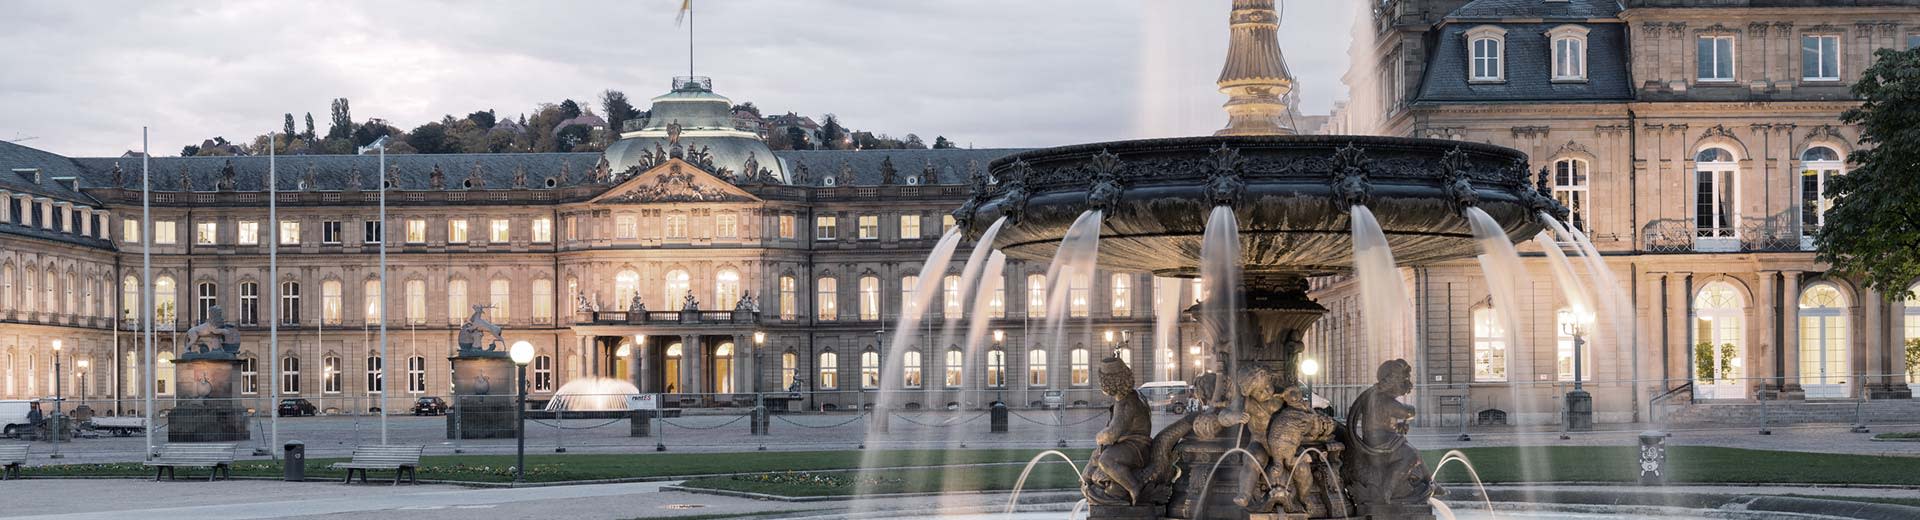 Una hermosa fuente domina el primer plano, mientras que detrás se encuentra un edificio histórico en la media luz de una noche de Stuttgart.